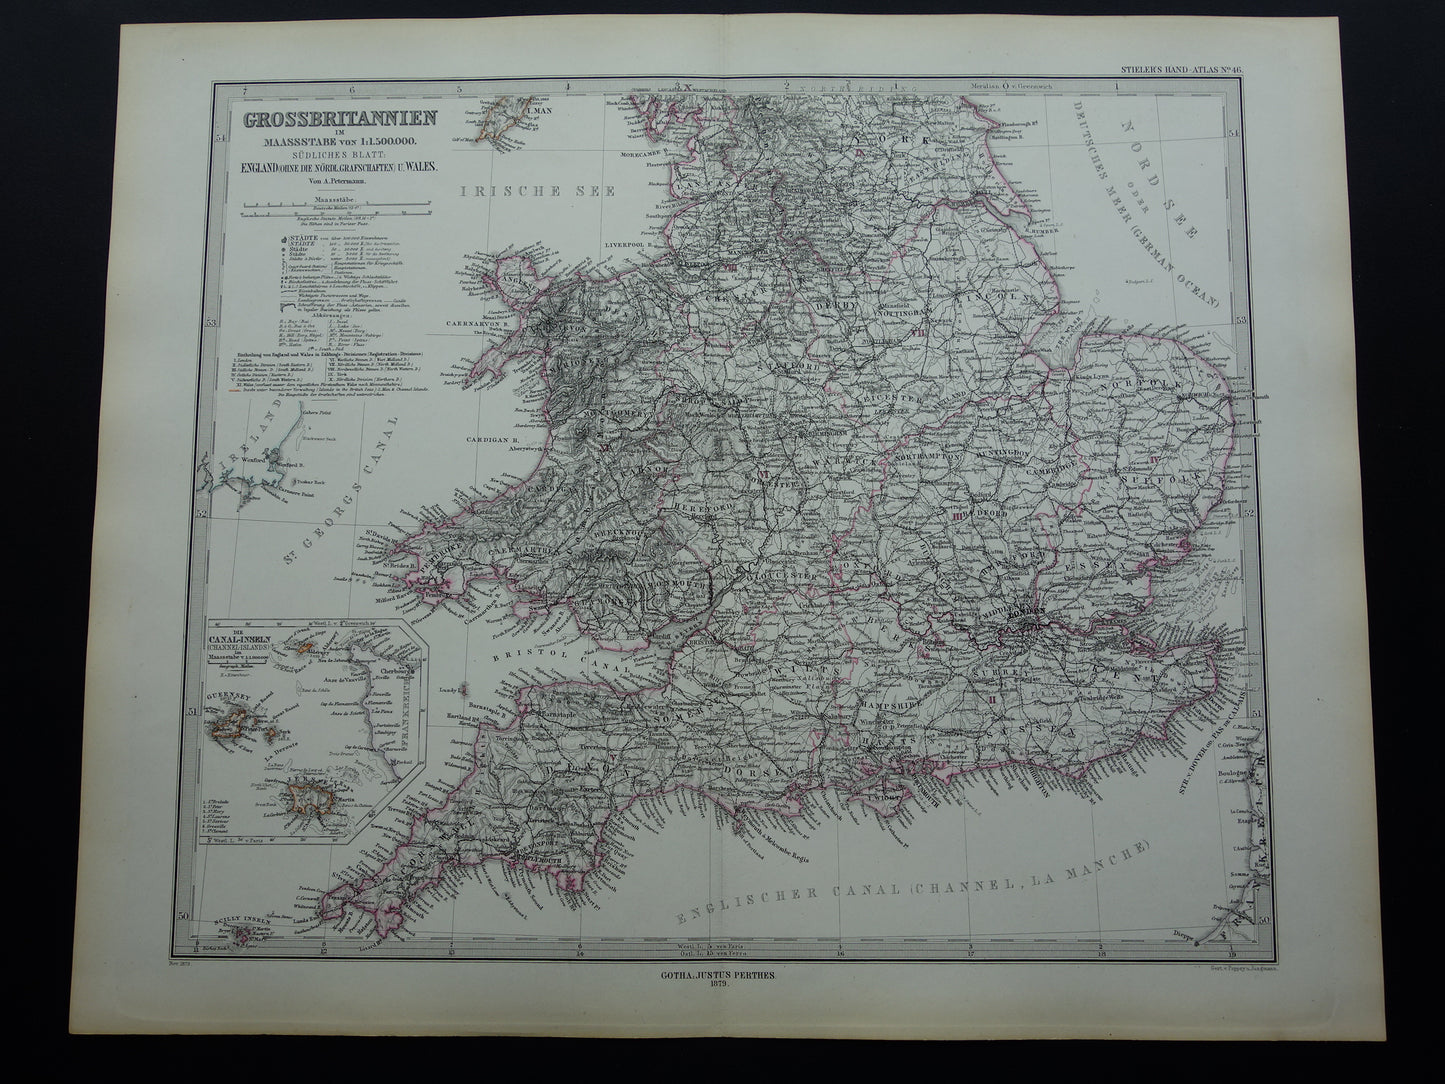 ENGELAND oude kaart van Engeland en Wales uit 1879 originele antieke landkaart London vintage met jaartal